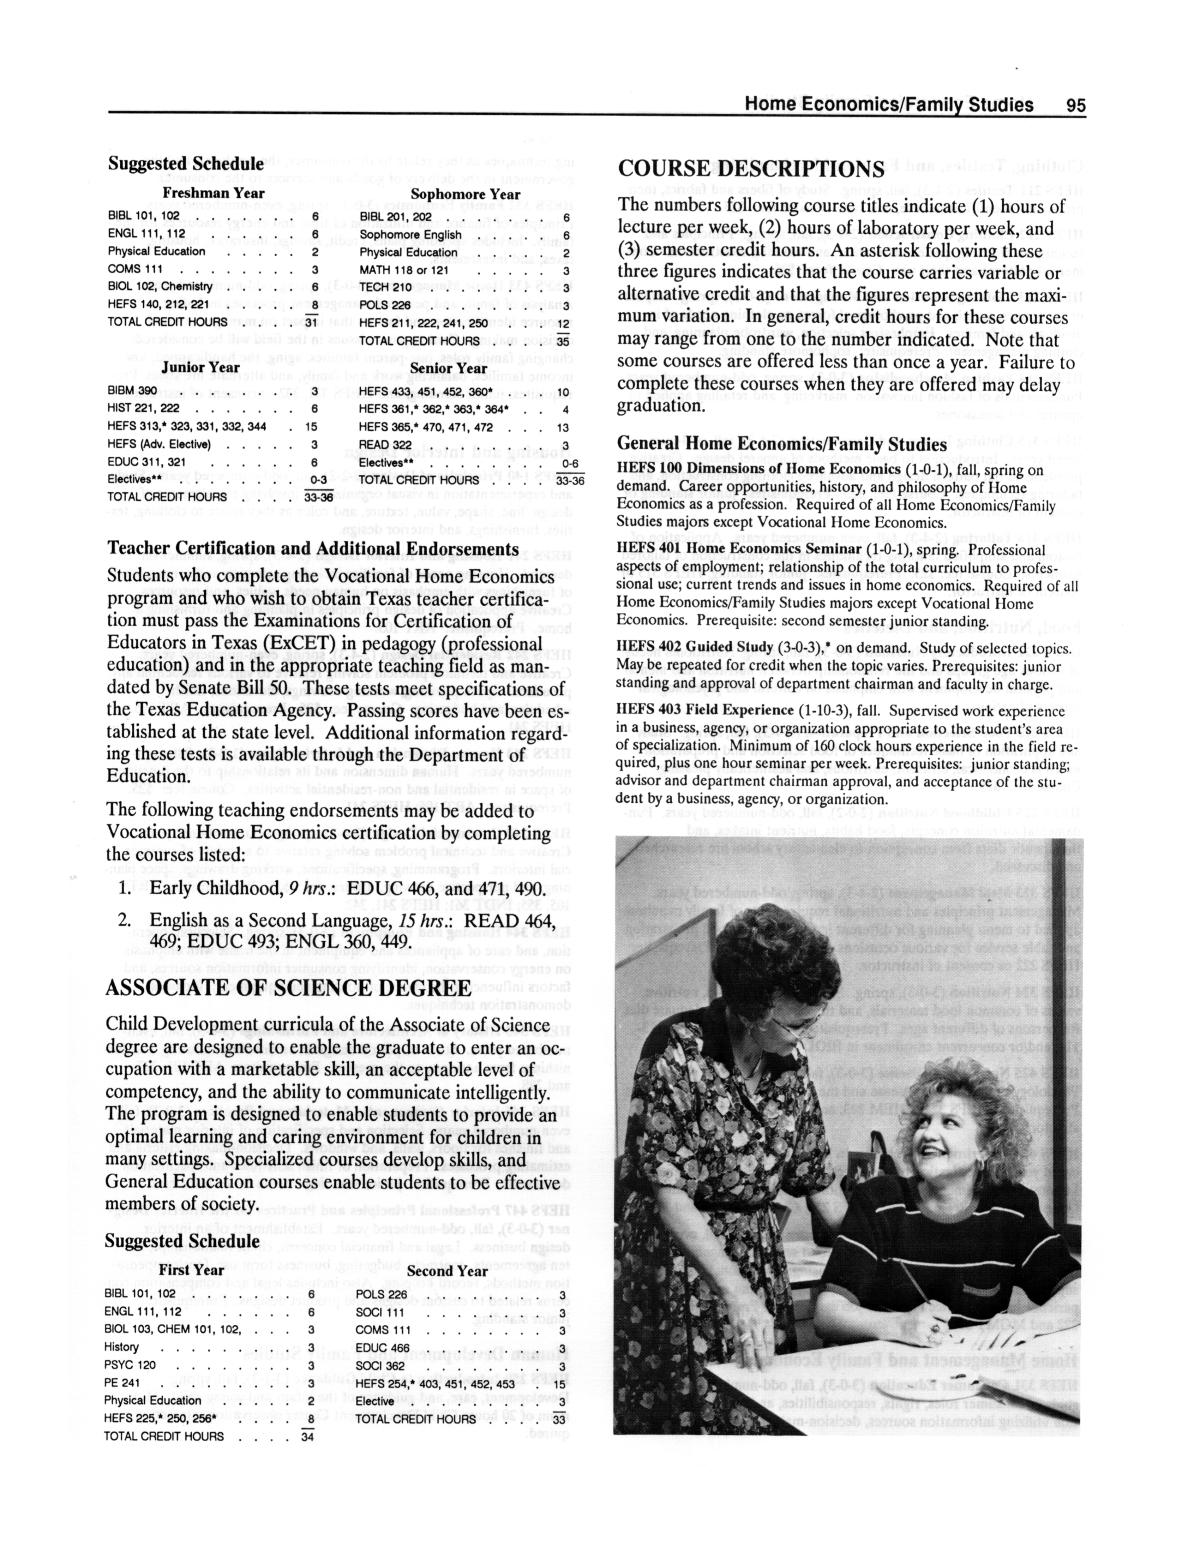 Catalog of Abilene Christian University, 1990-1991
                                                
                                                    95
                                                